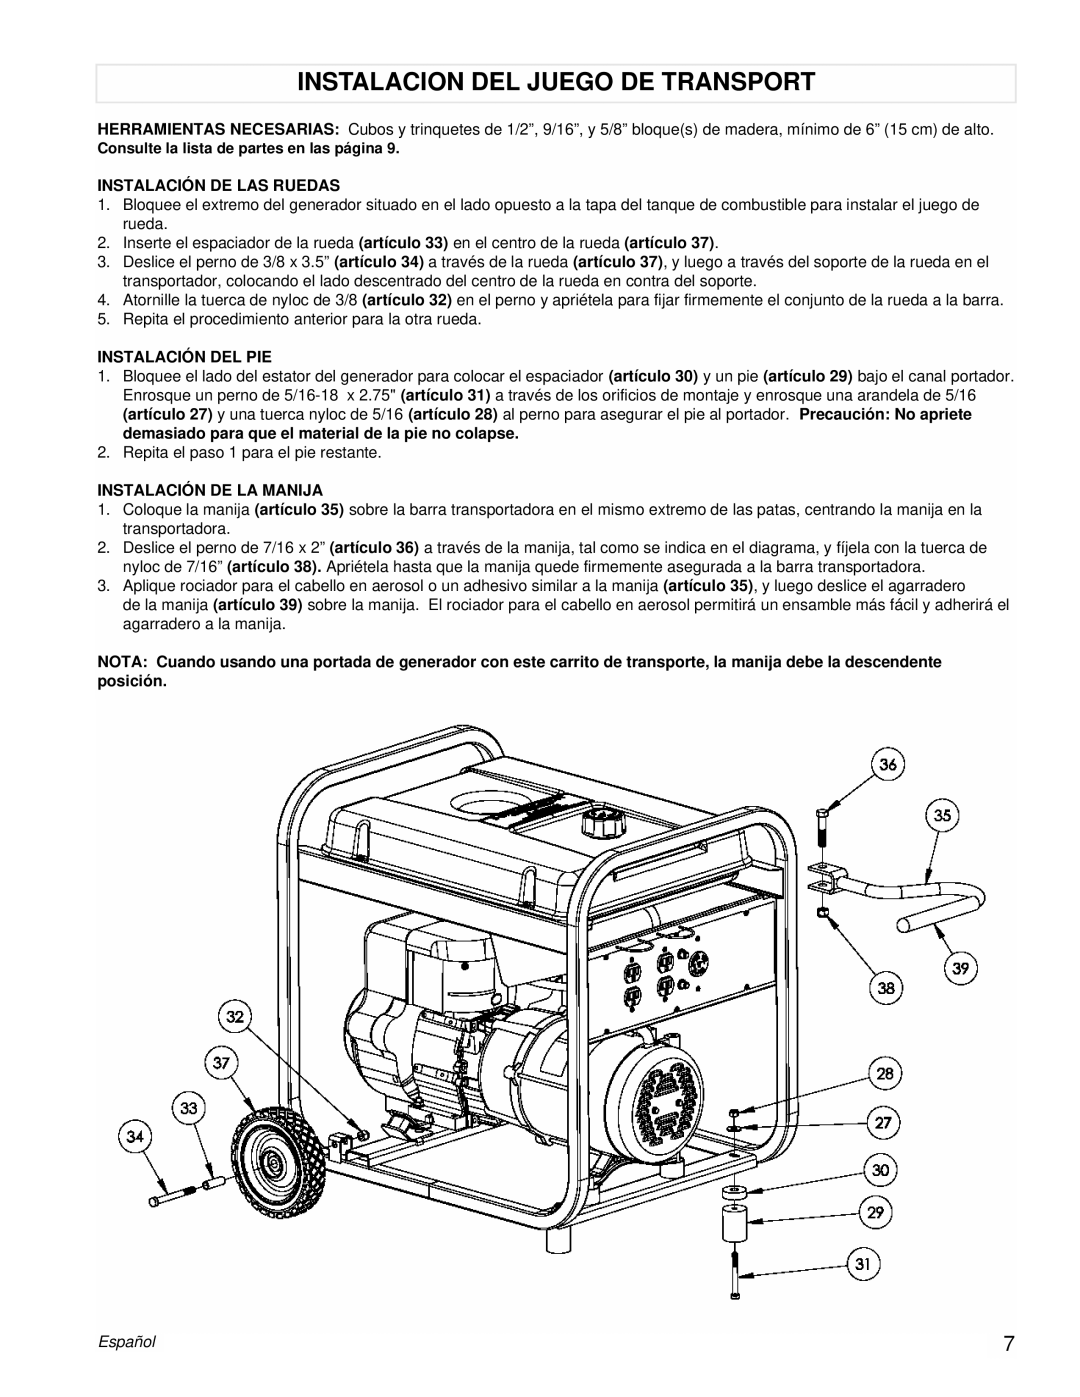 Powermate PM0525312.02 manual Instalacion Del Juego De Transport, Instalación De Las Ruedas, Instalación Del Pie, Español 